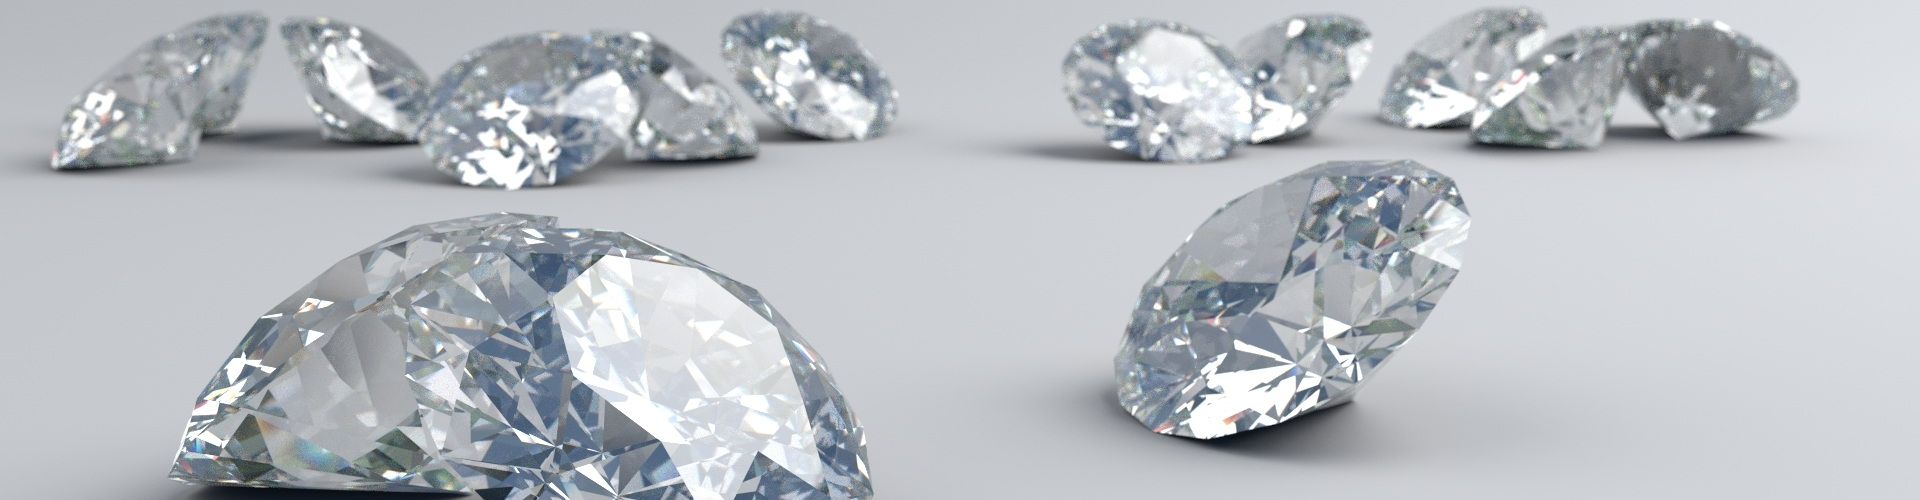 13 fein geschliffene Diamanten und Brillanten